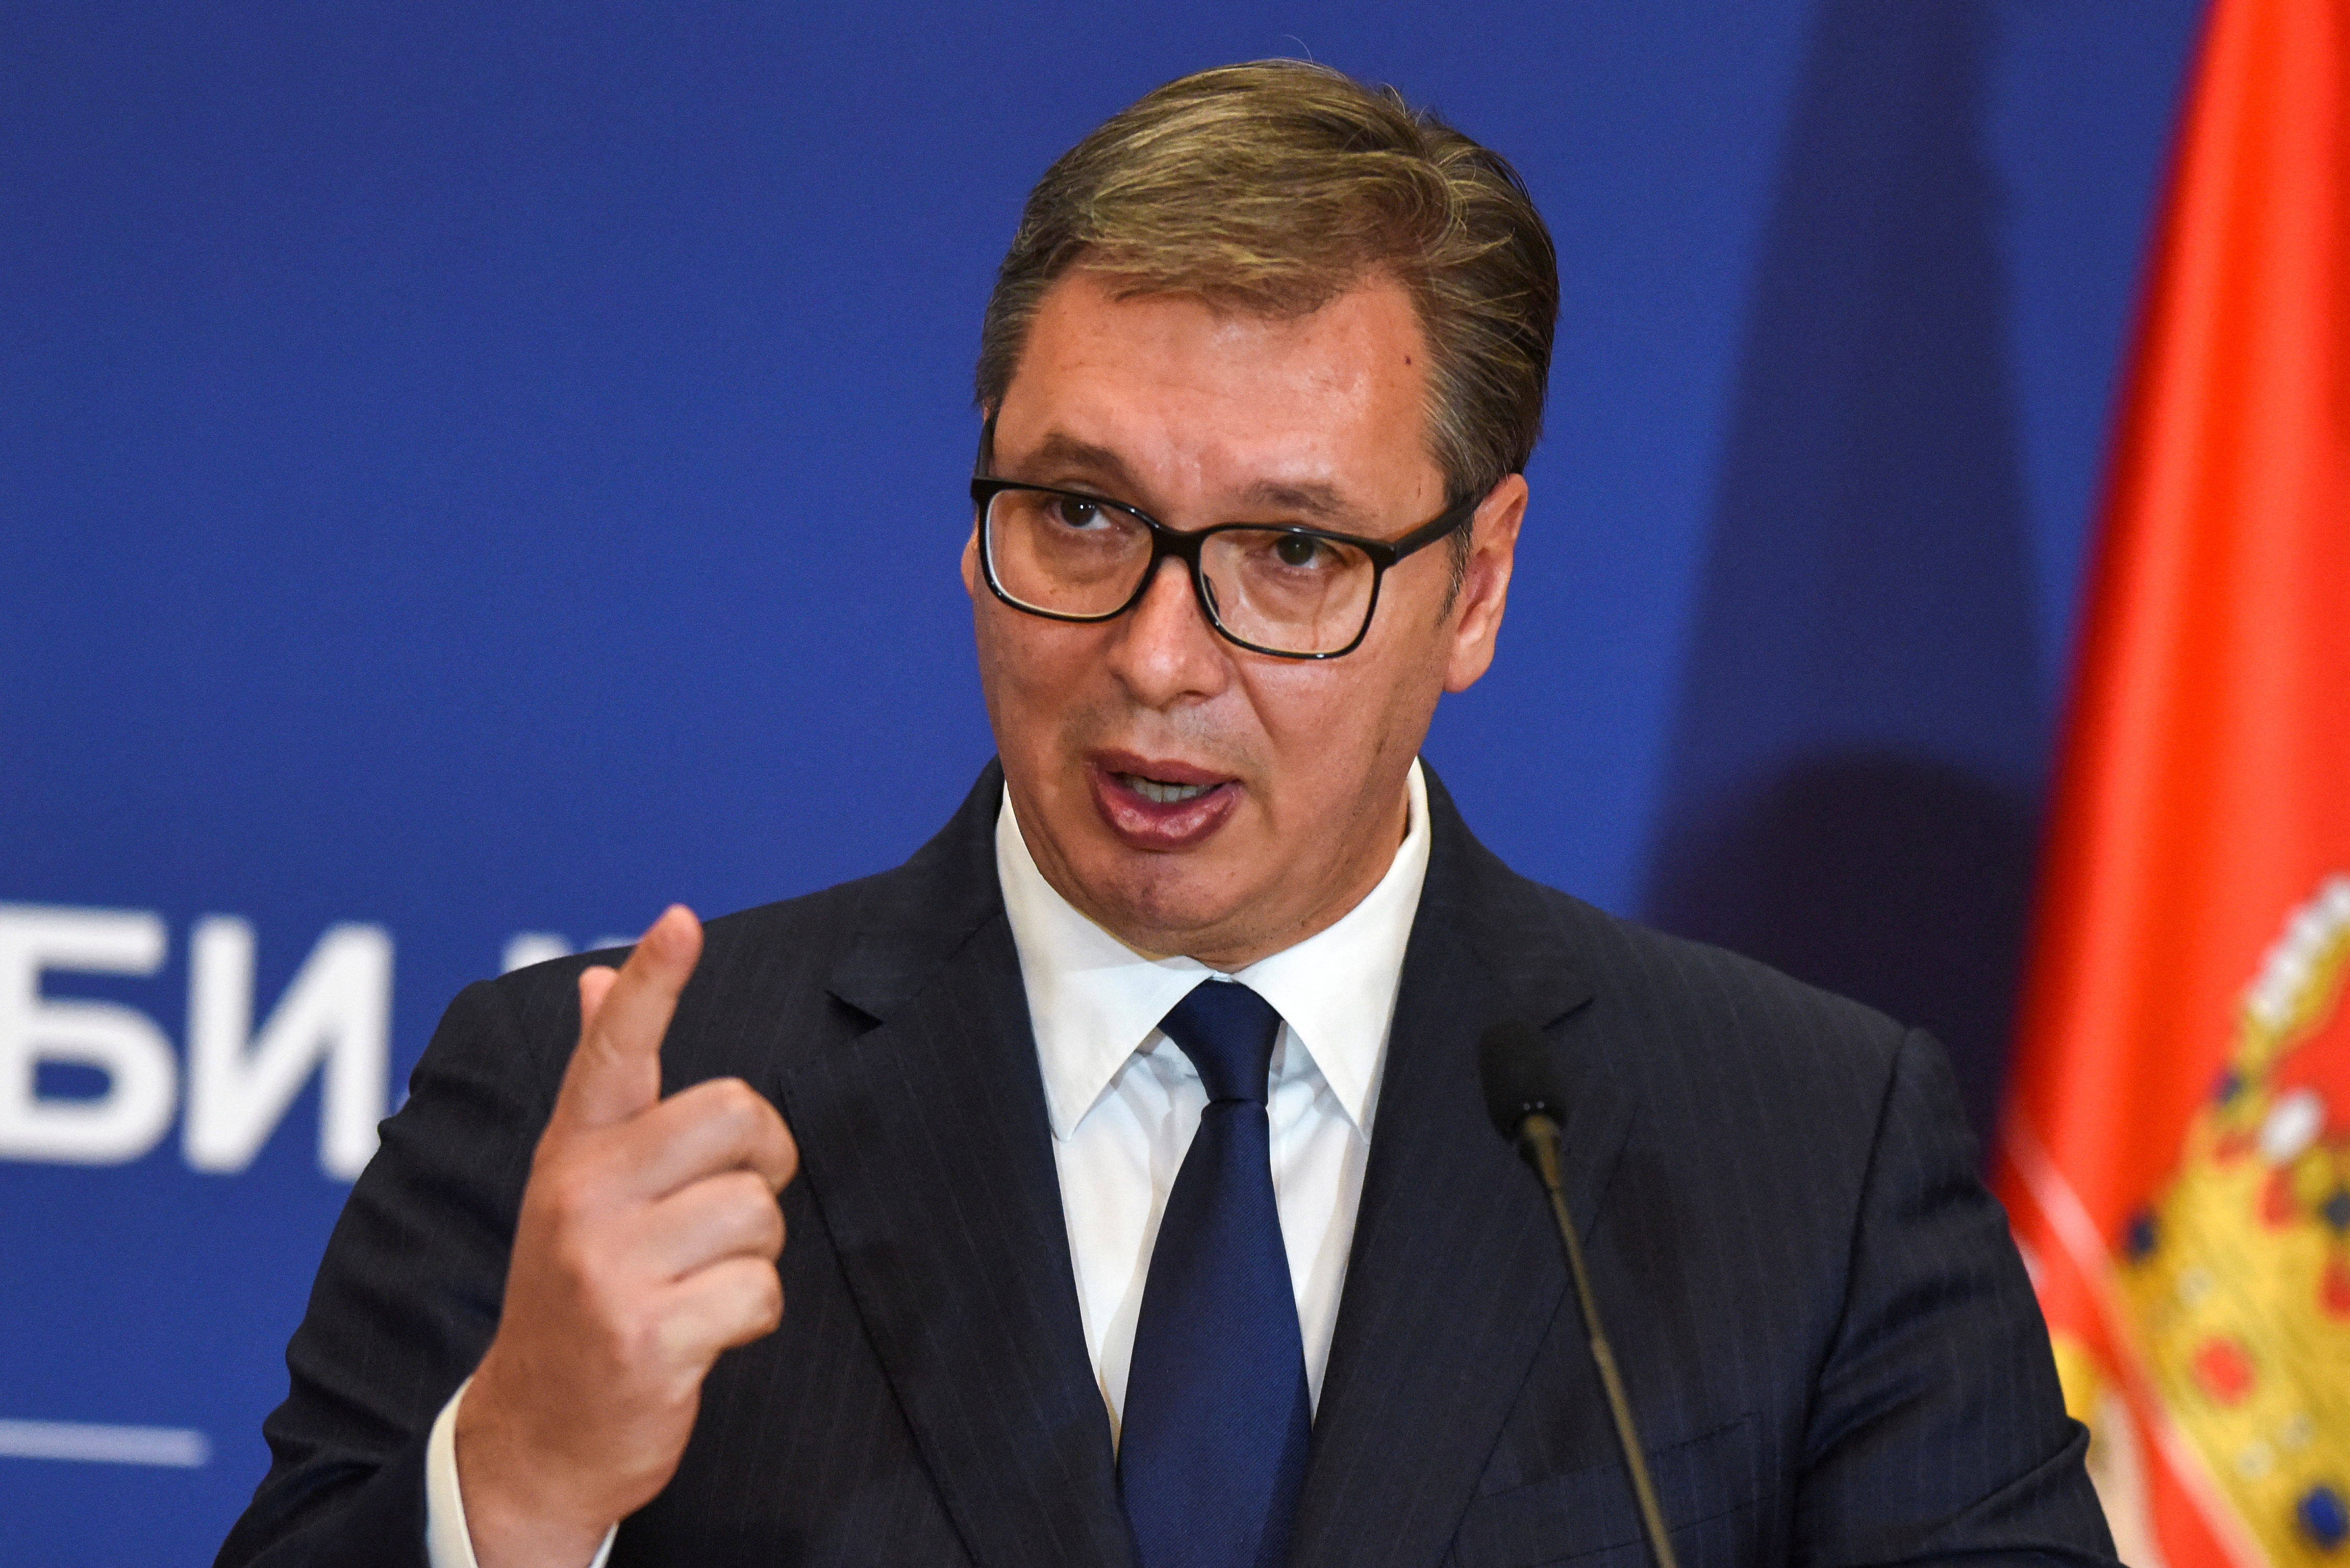 تحذير من رئيس صربيا بشأن خطر محتمل قد يعم البلاد